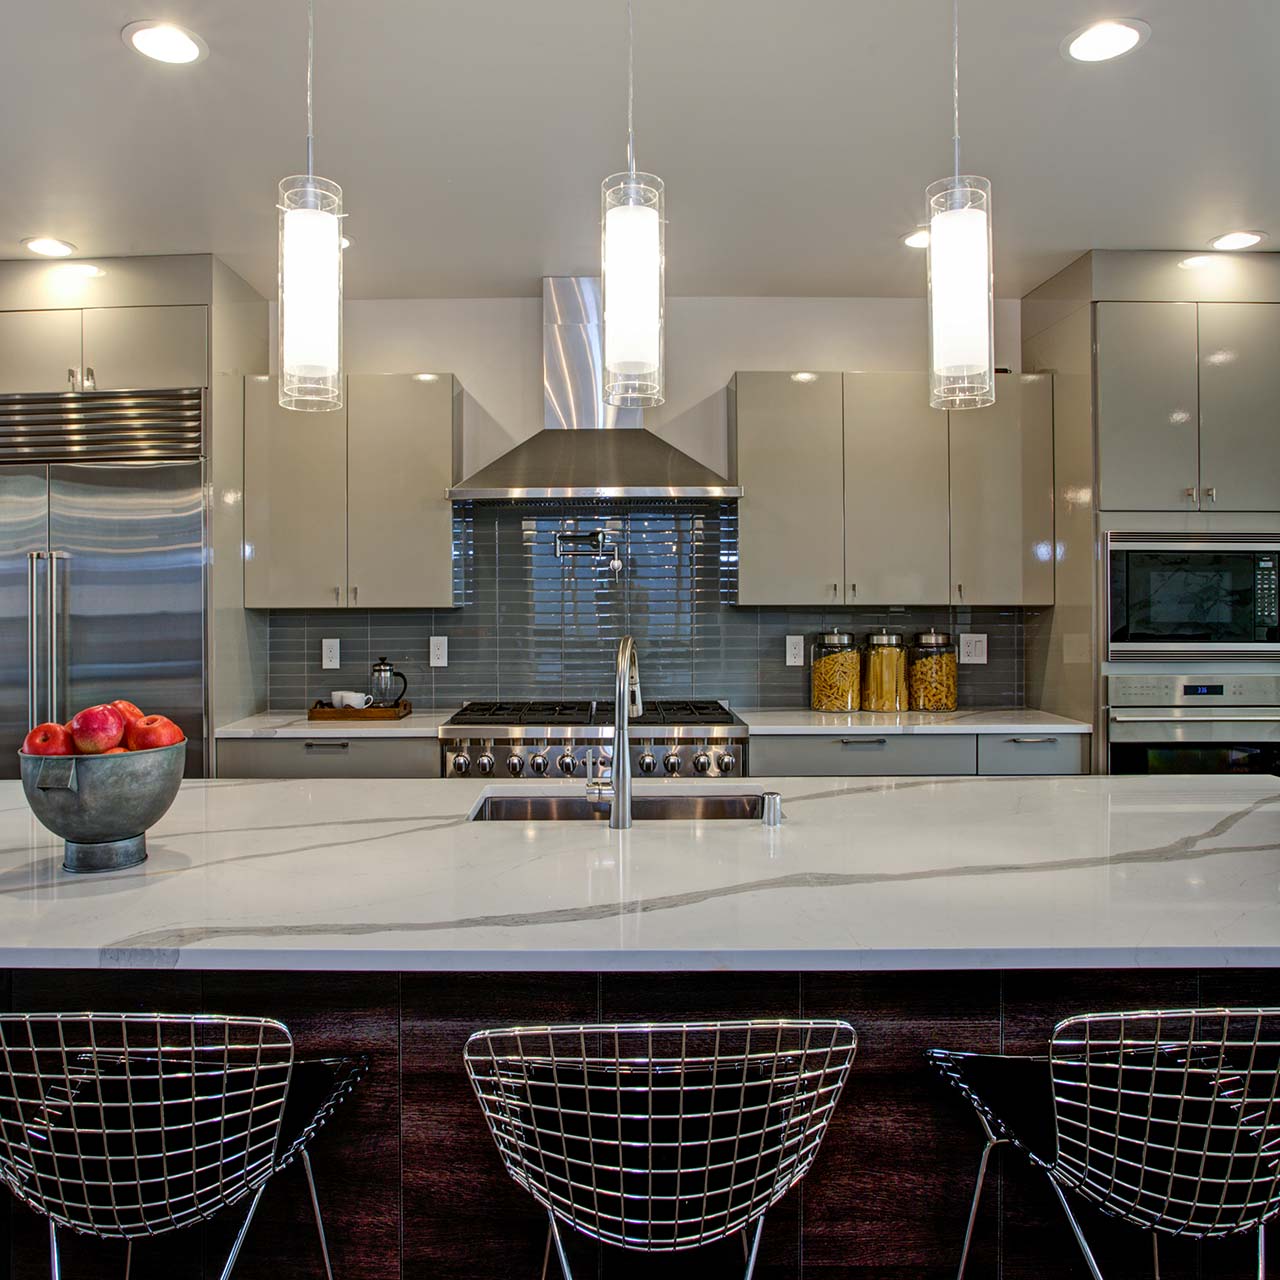 Sleek modular kitchen design with modern look